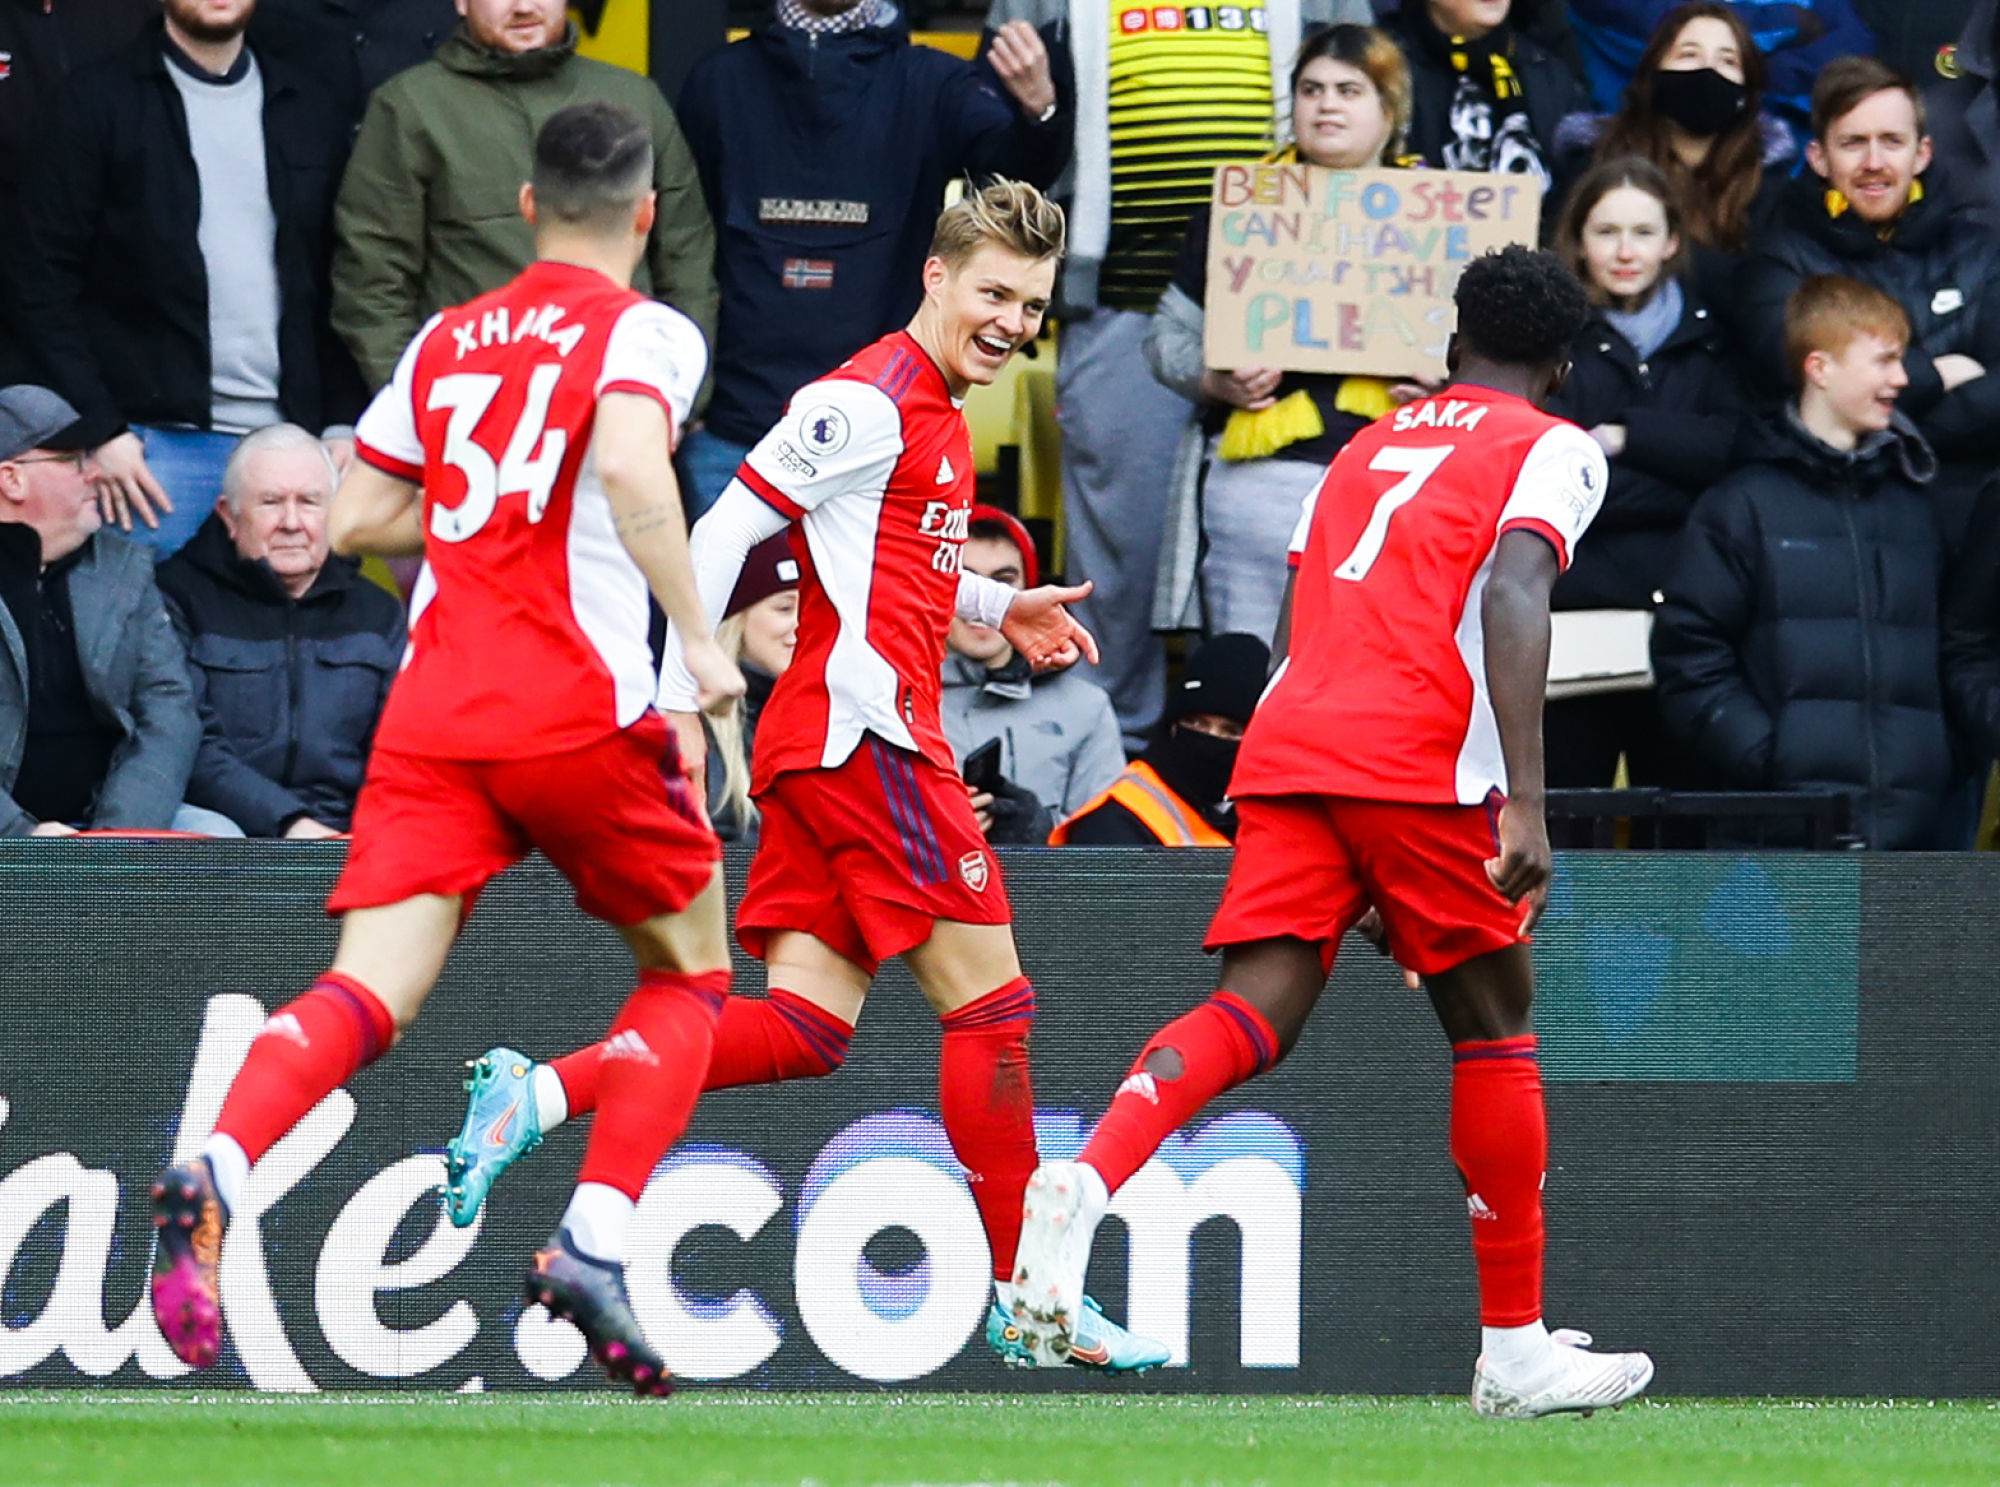 Watford 2 – 3 Arsenal (les notes) : Contrat rempli avec supplément panique de fin de match